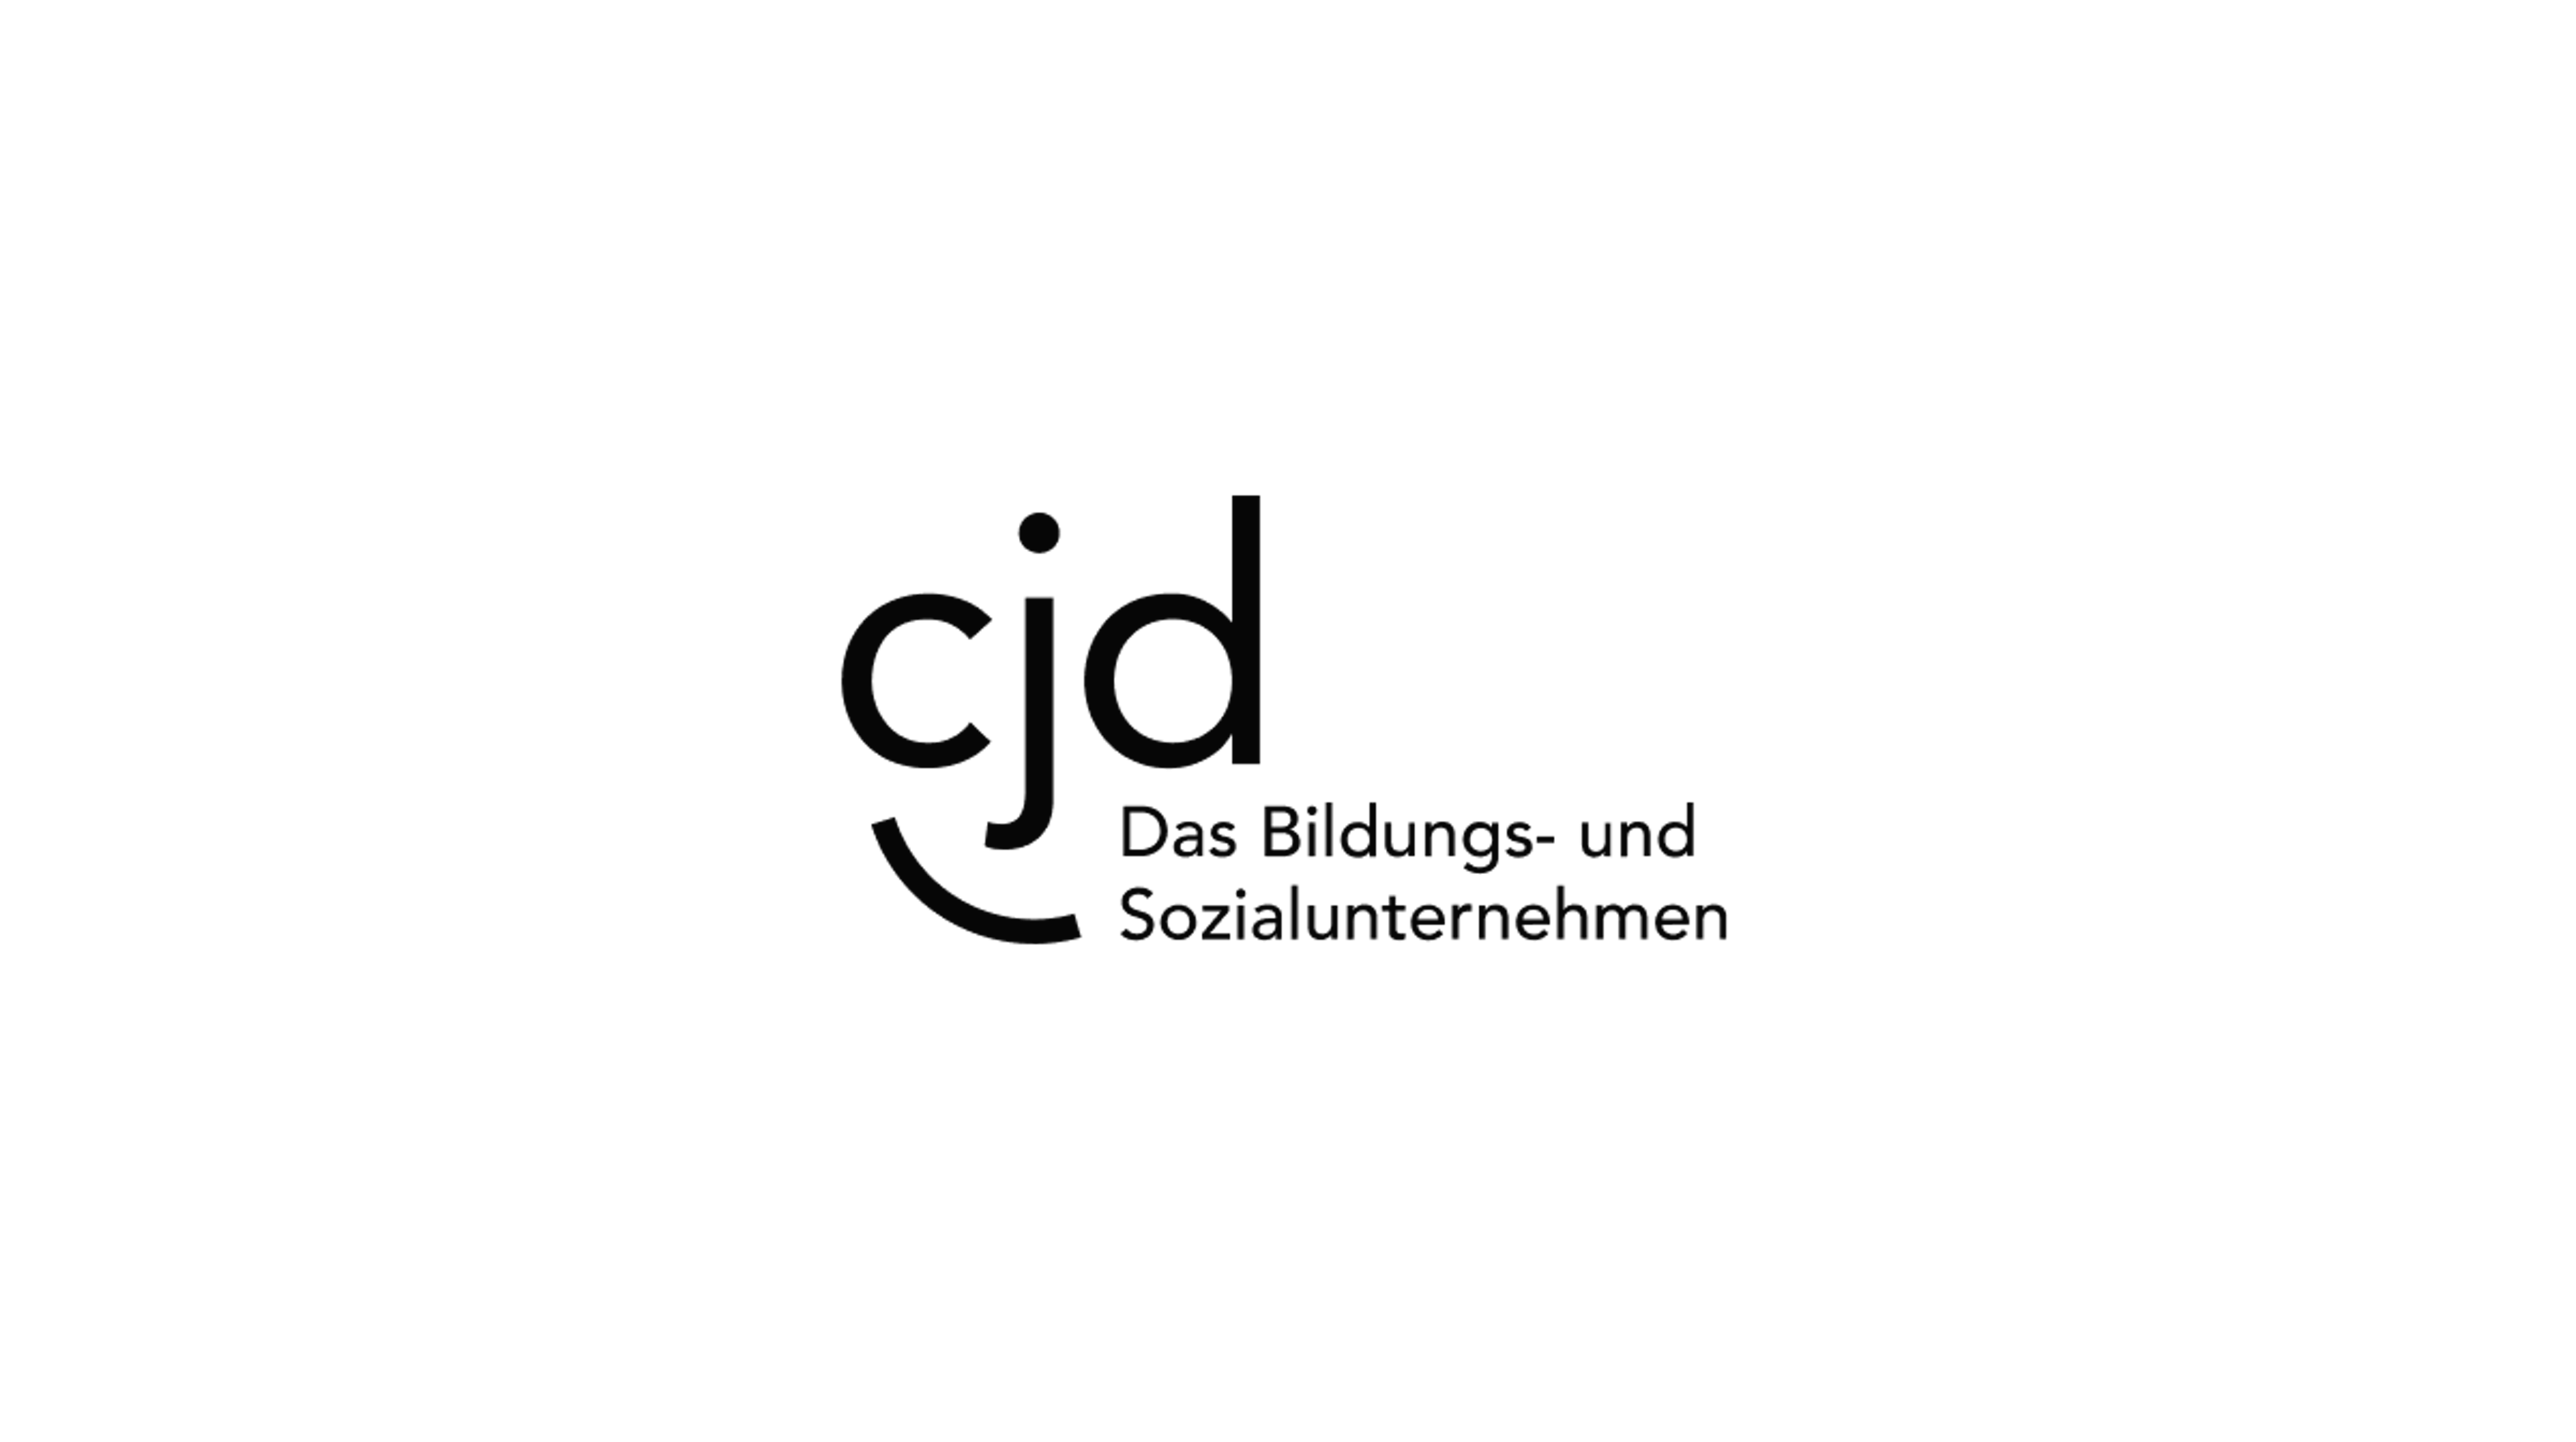 Logo CJD (christliche Jugendwerk Deutschland), Das Bildungs- und Sozialunternehmen 